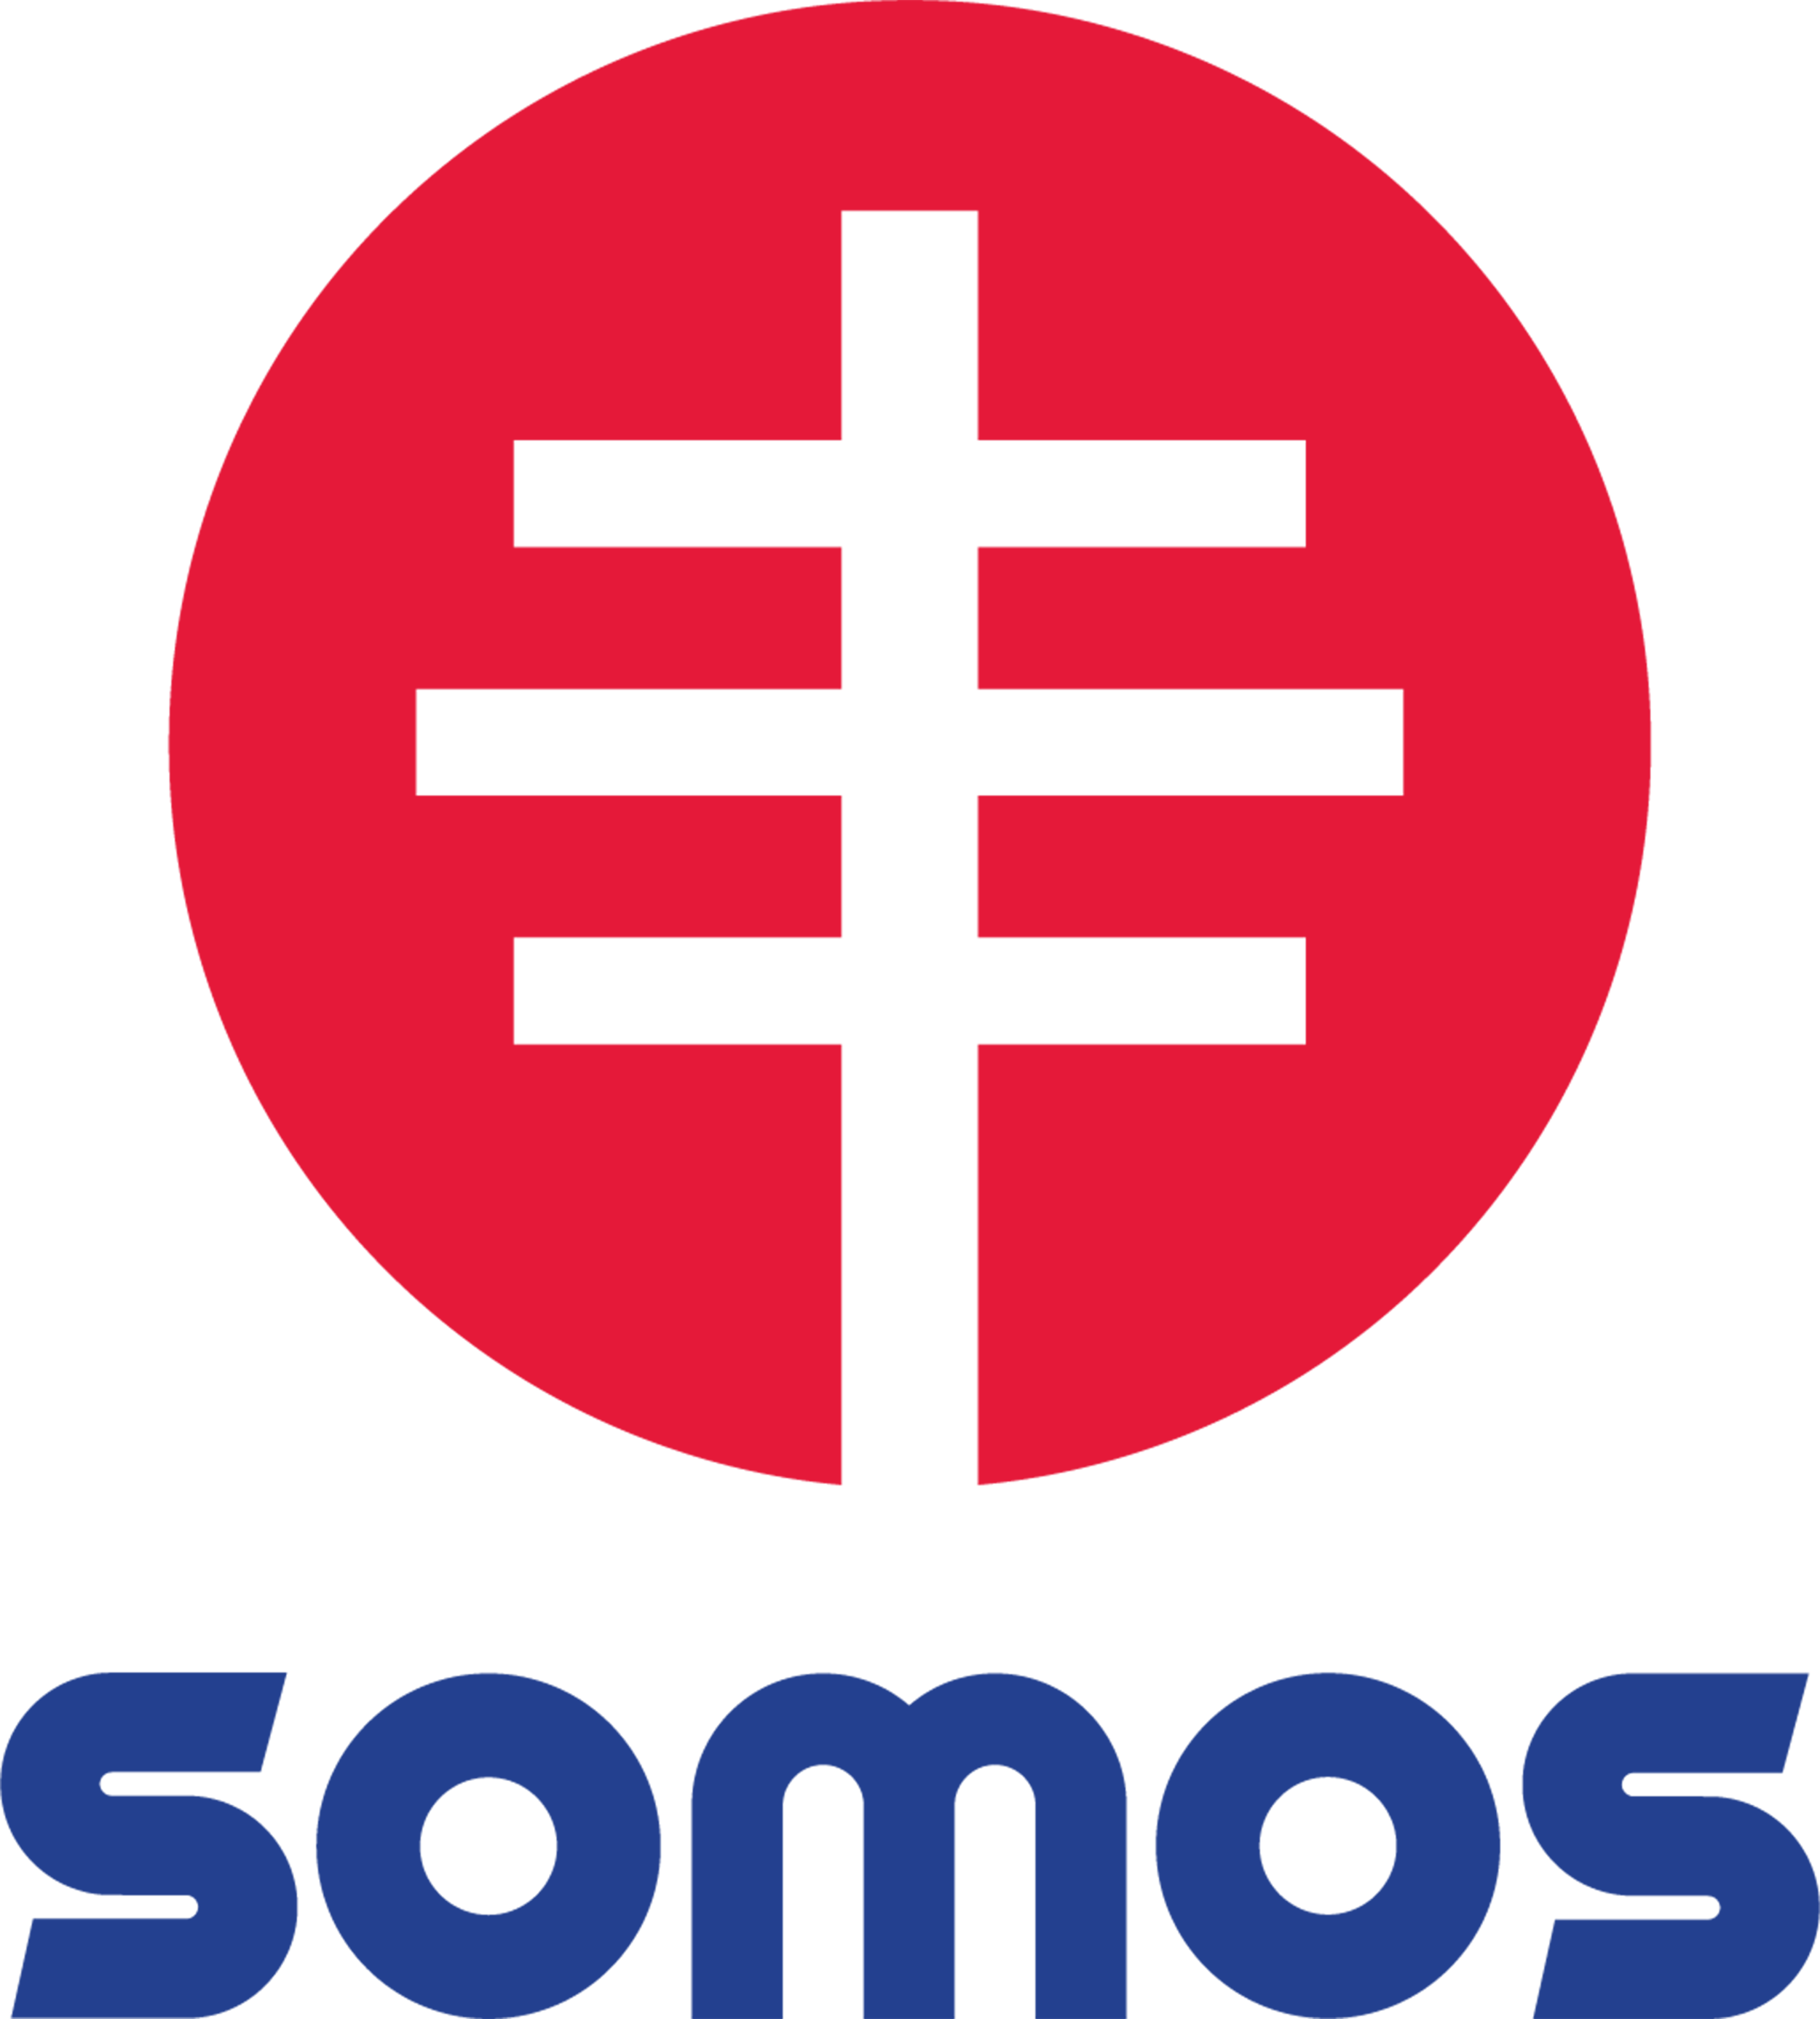 SOMOS Only-Vertical logo-Hi RES PNG (3).png